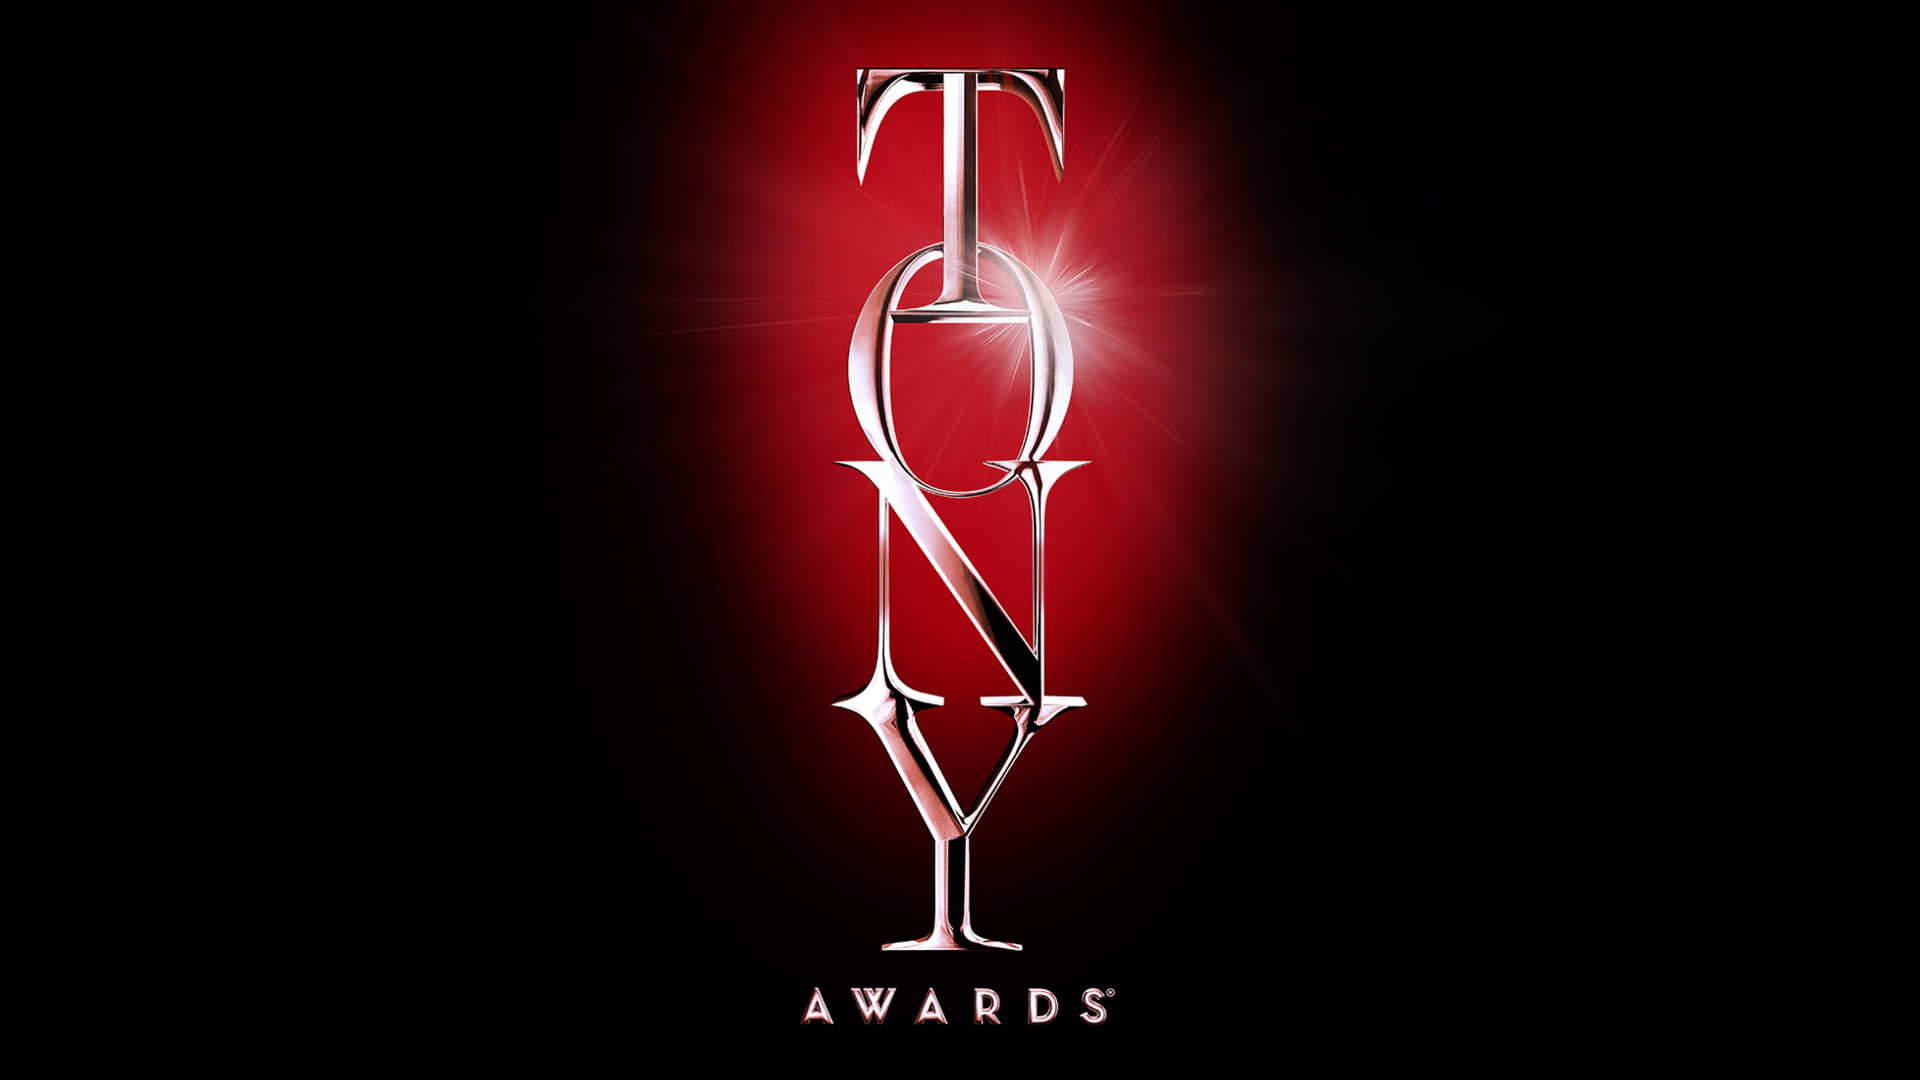 The Tony Awards News on CBS